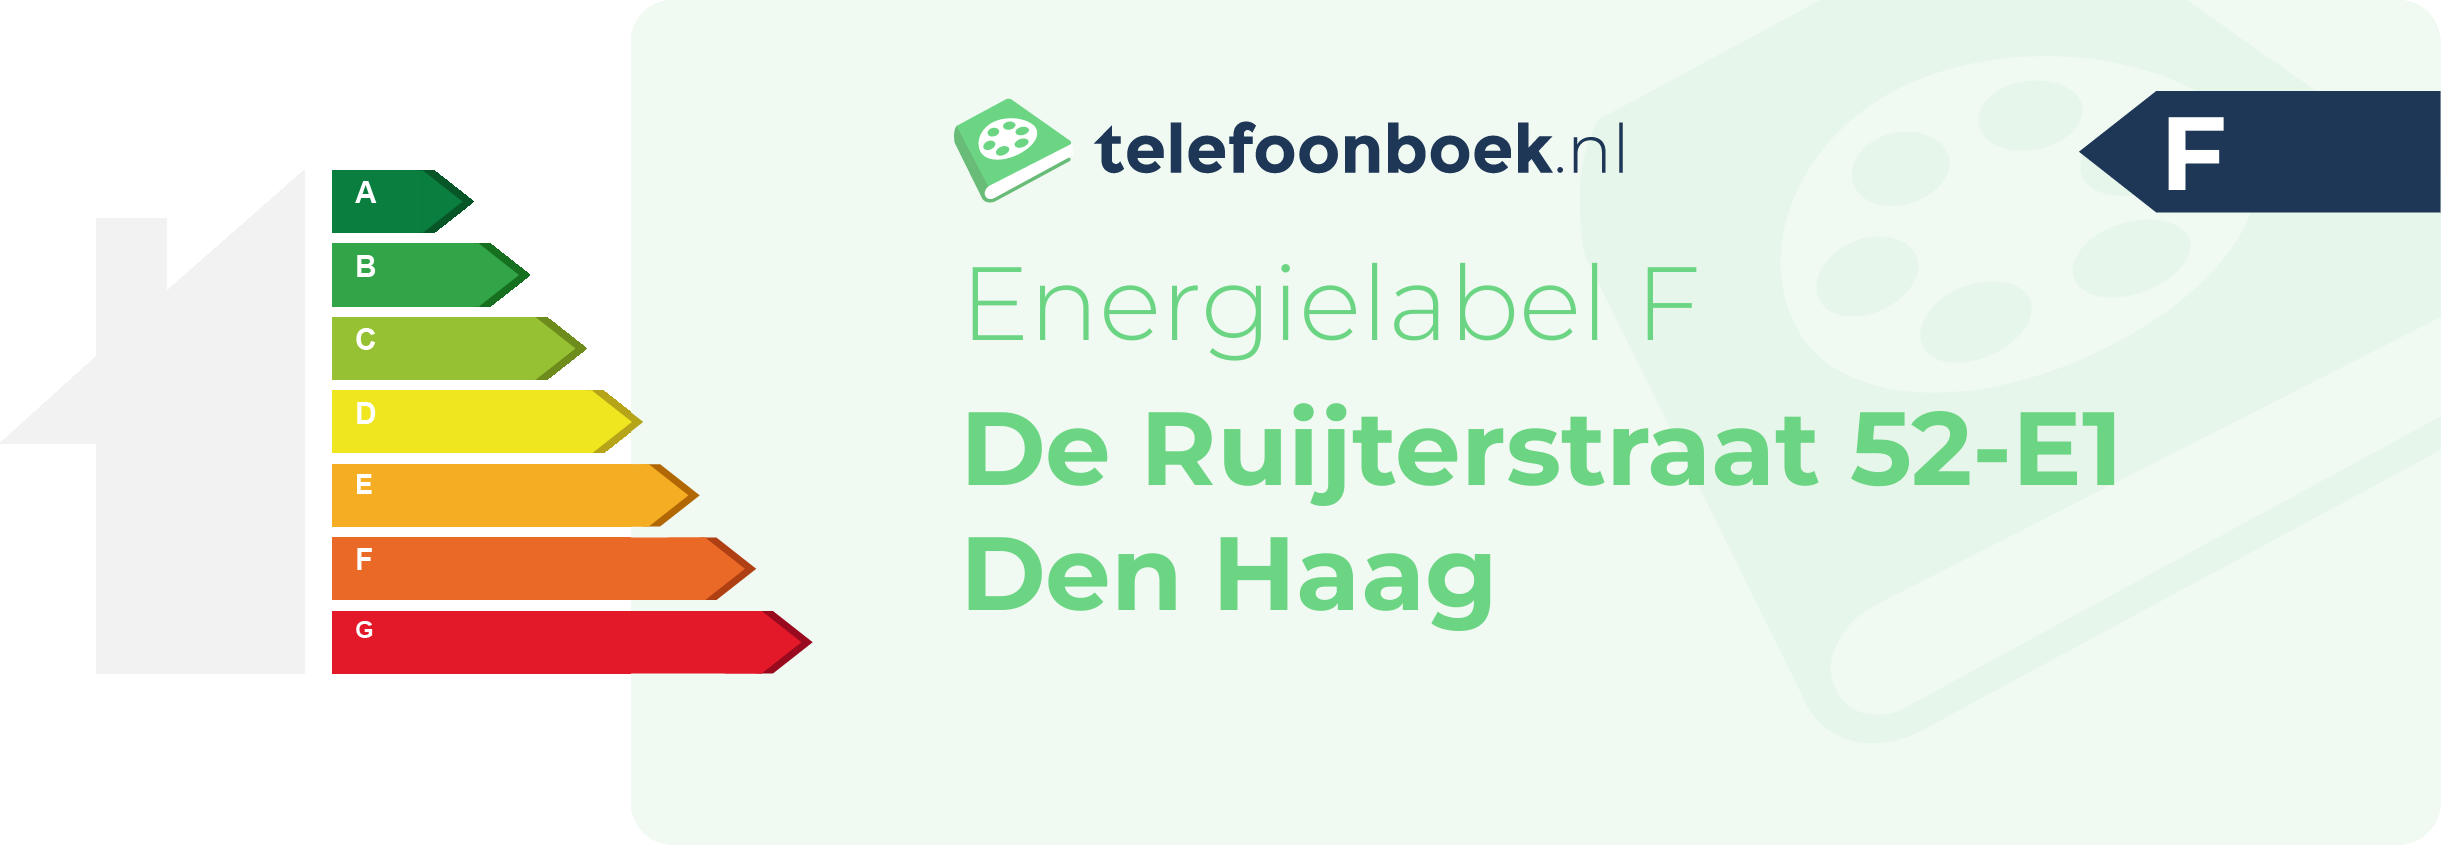 Energielabel De Ruijterstraat 52-E1 Den Haag